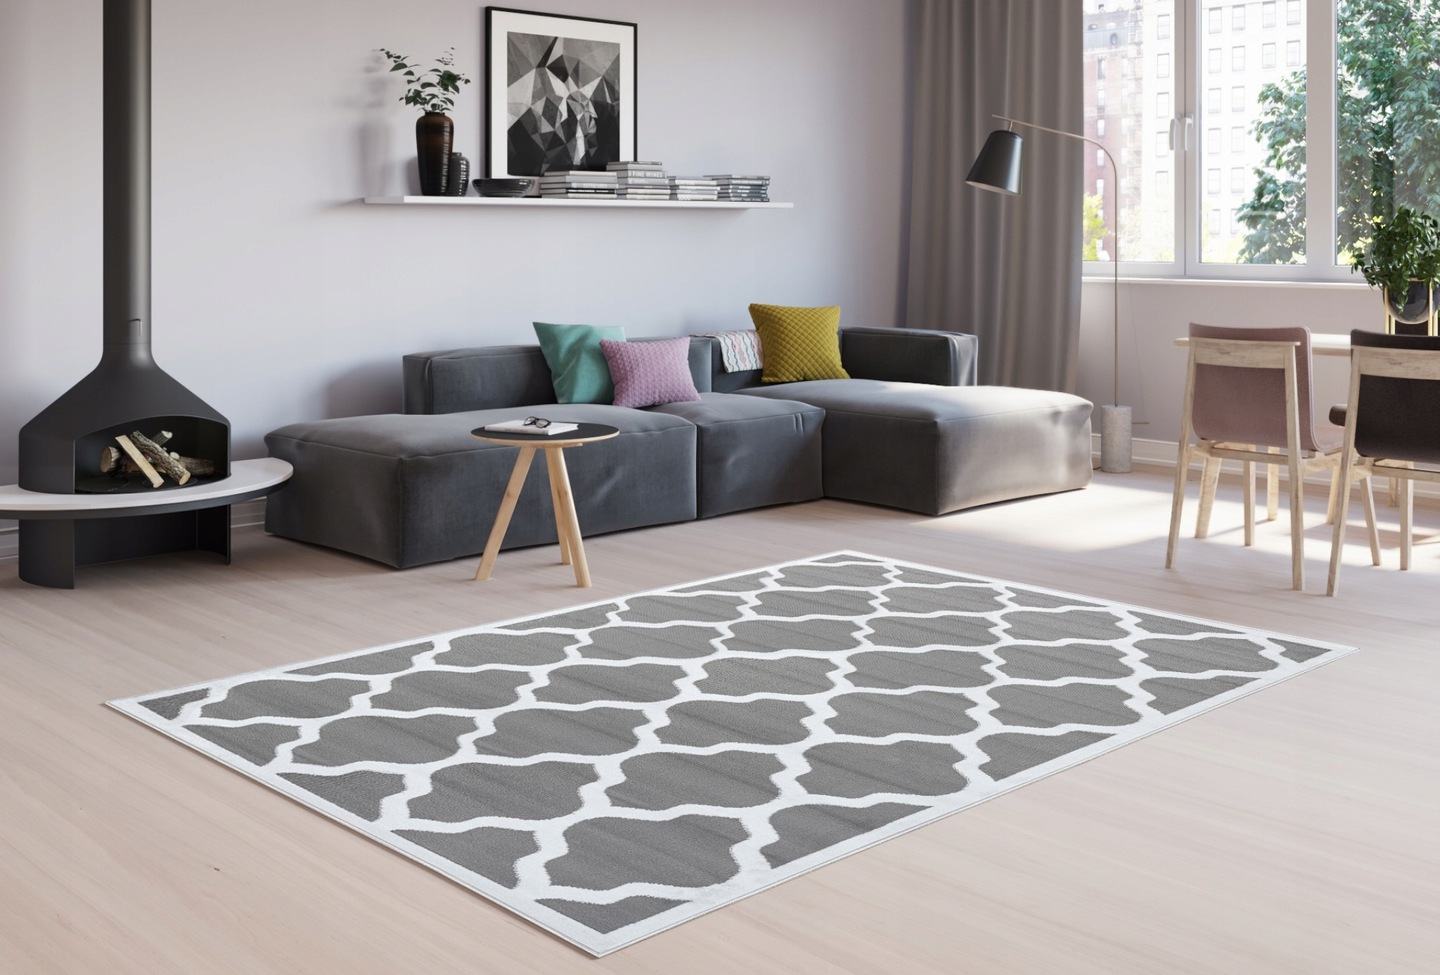 Moderný koberec HOME art - Marocký vzor sivý s lémom